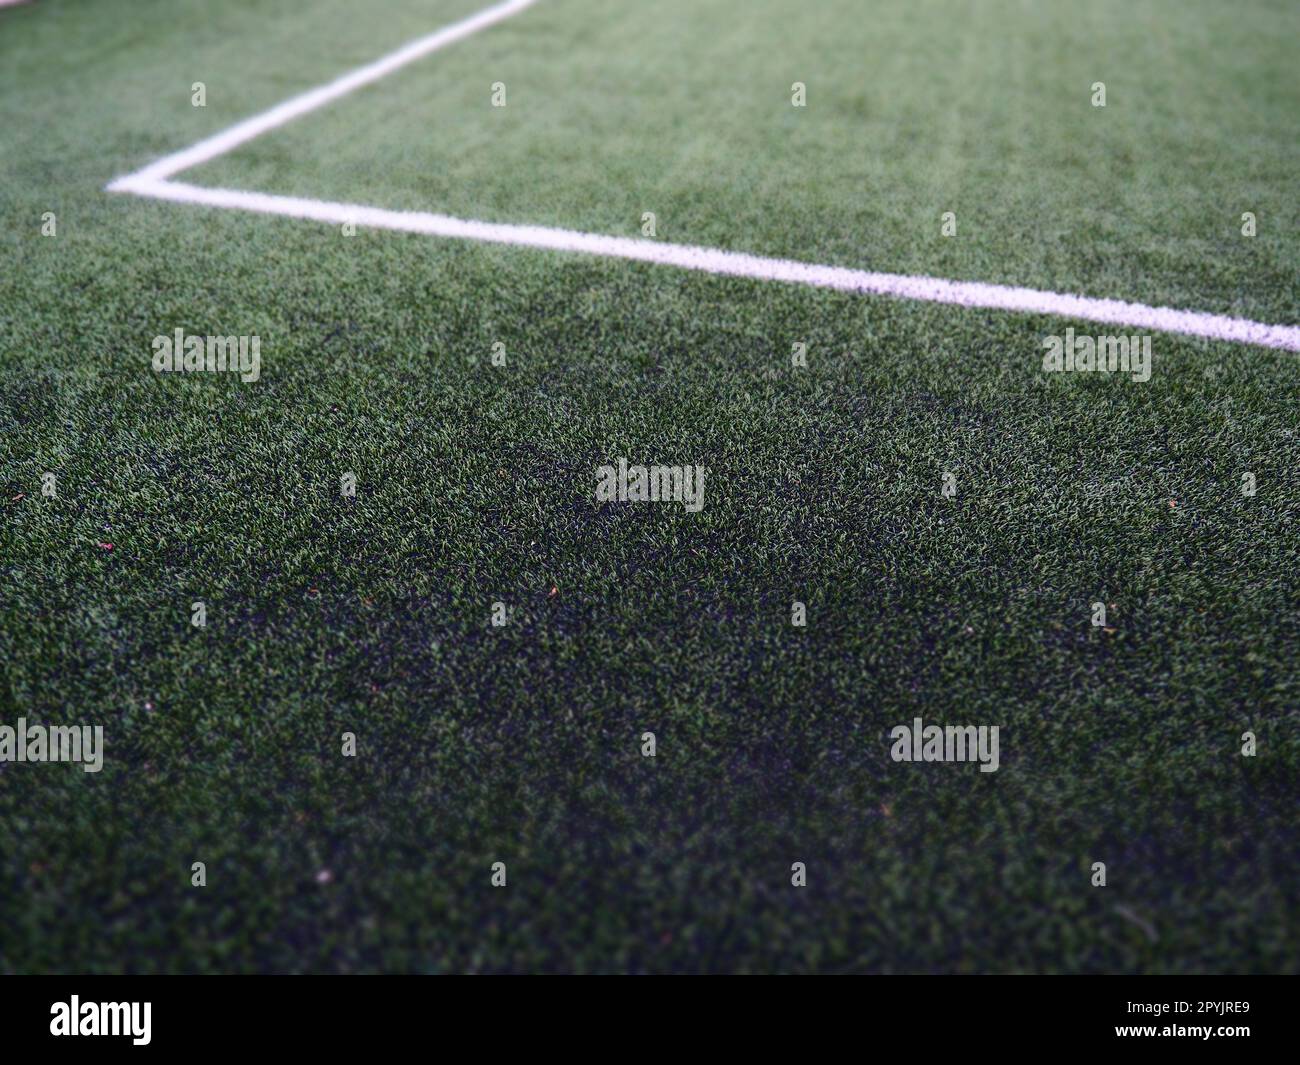 Die Markierung des Fußballfeldes auf dem grünen Gras. Weiße Linien mit einer Breite von maximal 12 cm oder 5 Zoll. Fußballfeld. Stockfoto